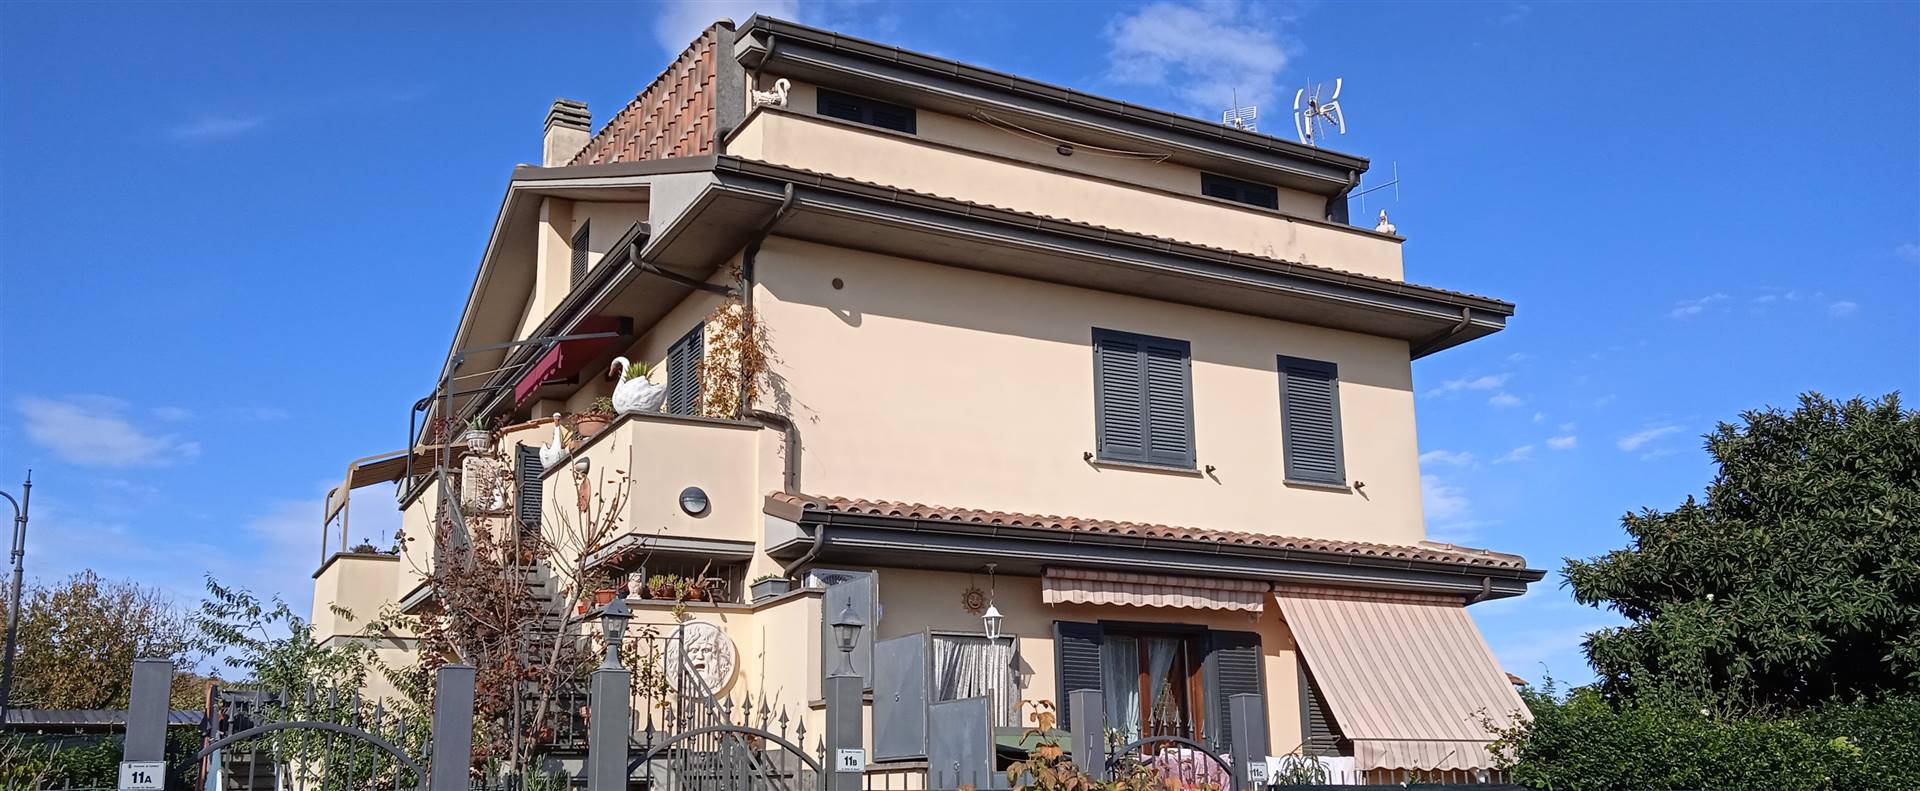 Appartamento in vendita a Lariano, 3 locali, prezzo € 160.000 | CambioCasa.it